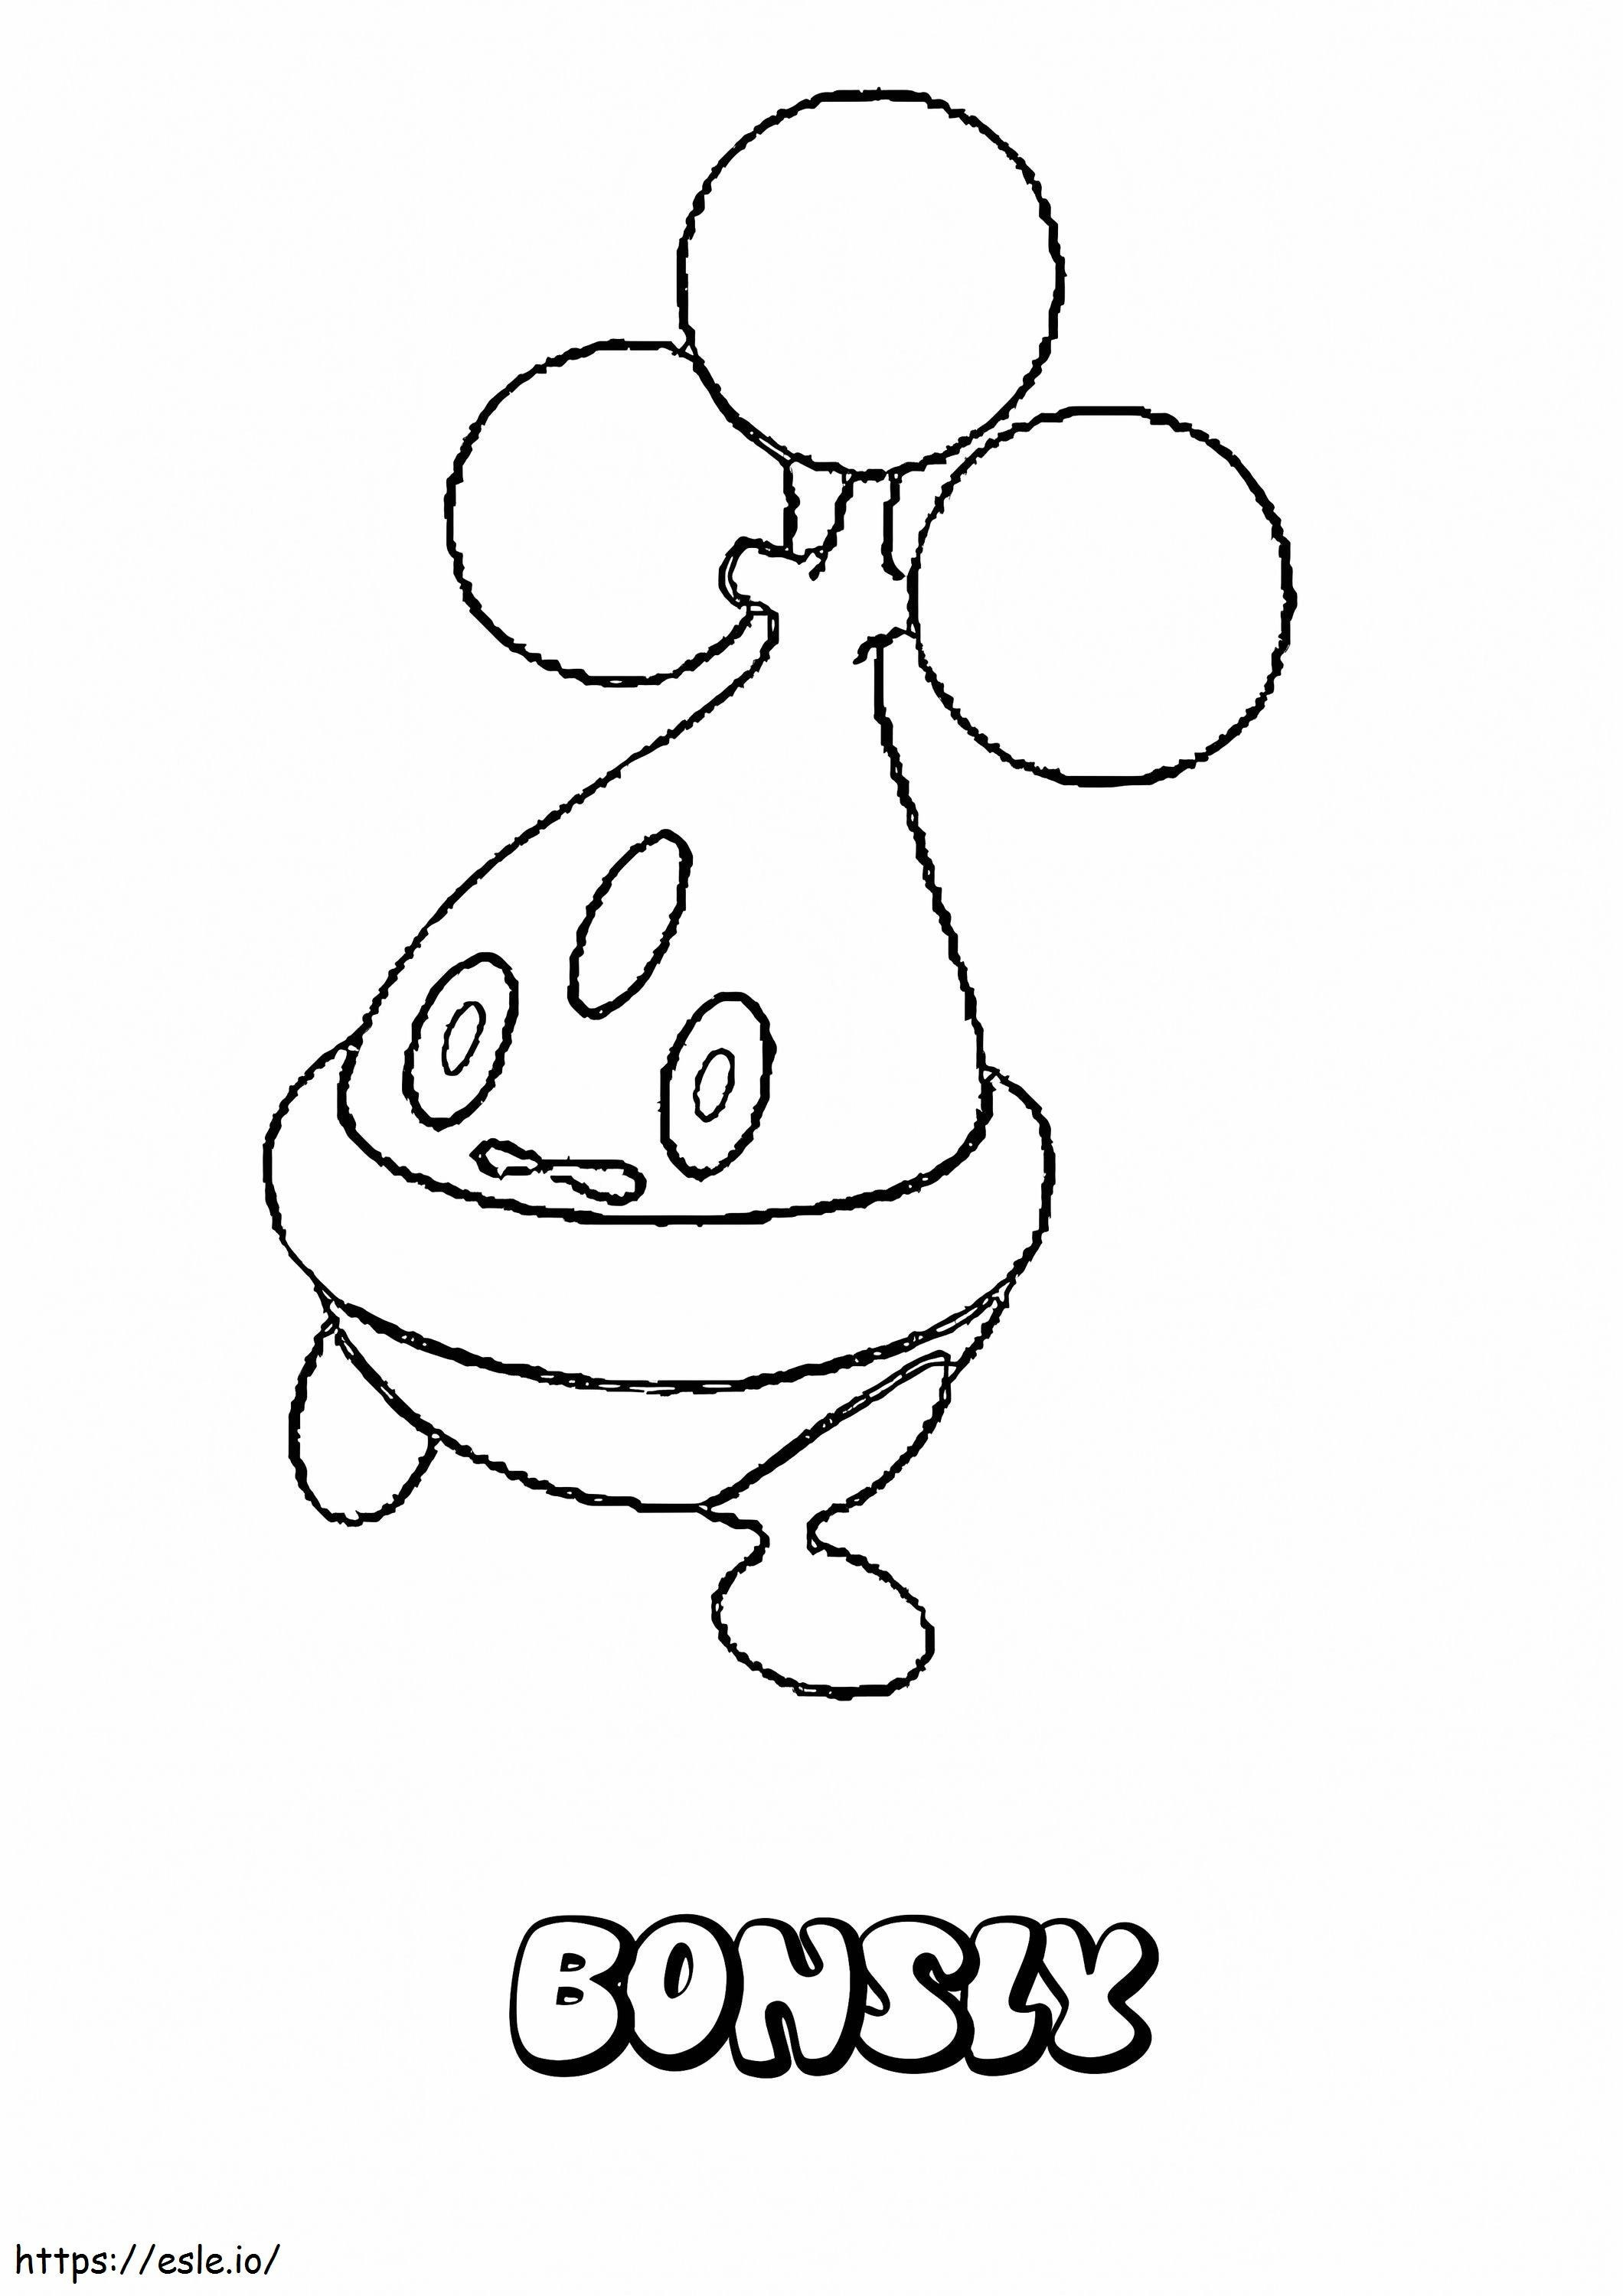 Coloriage Pokémon Bonsly à imprimer dessin